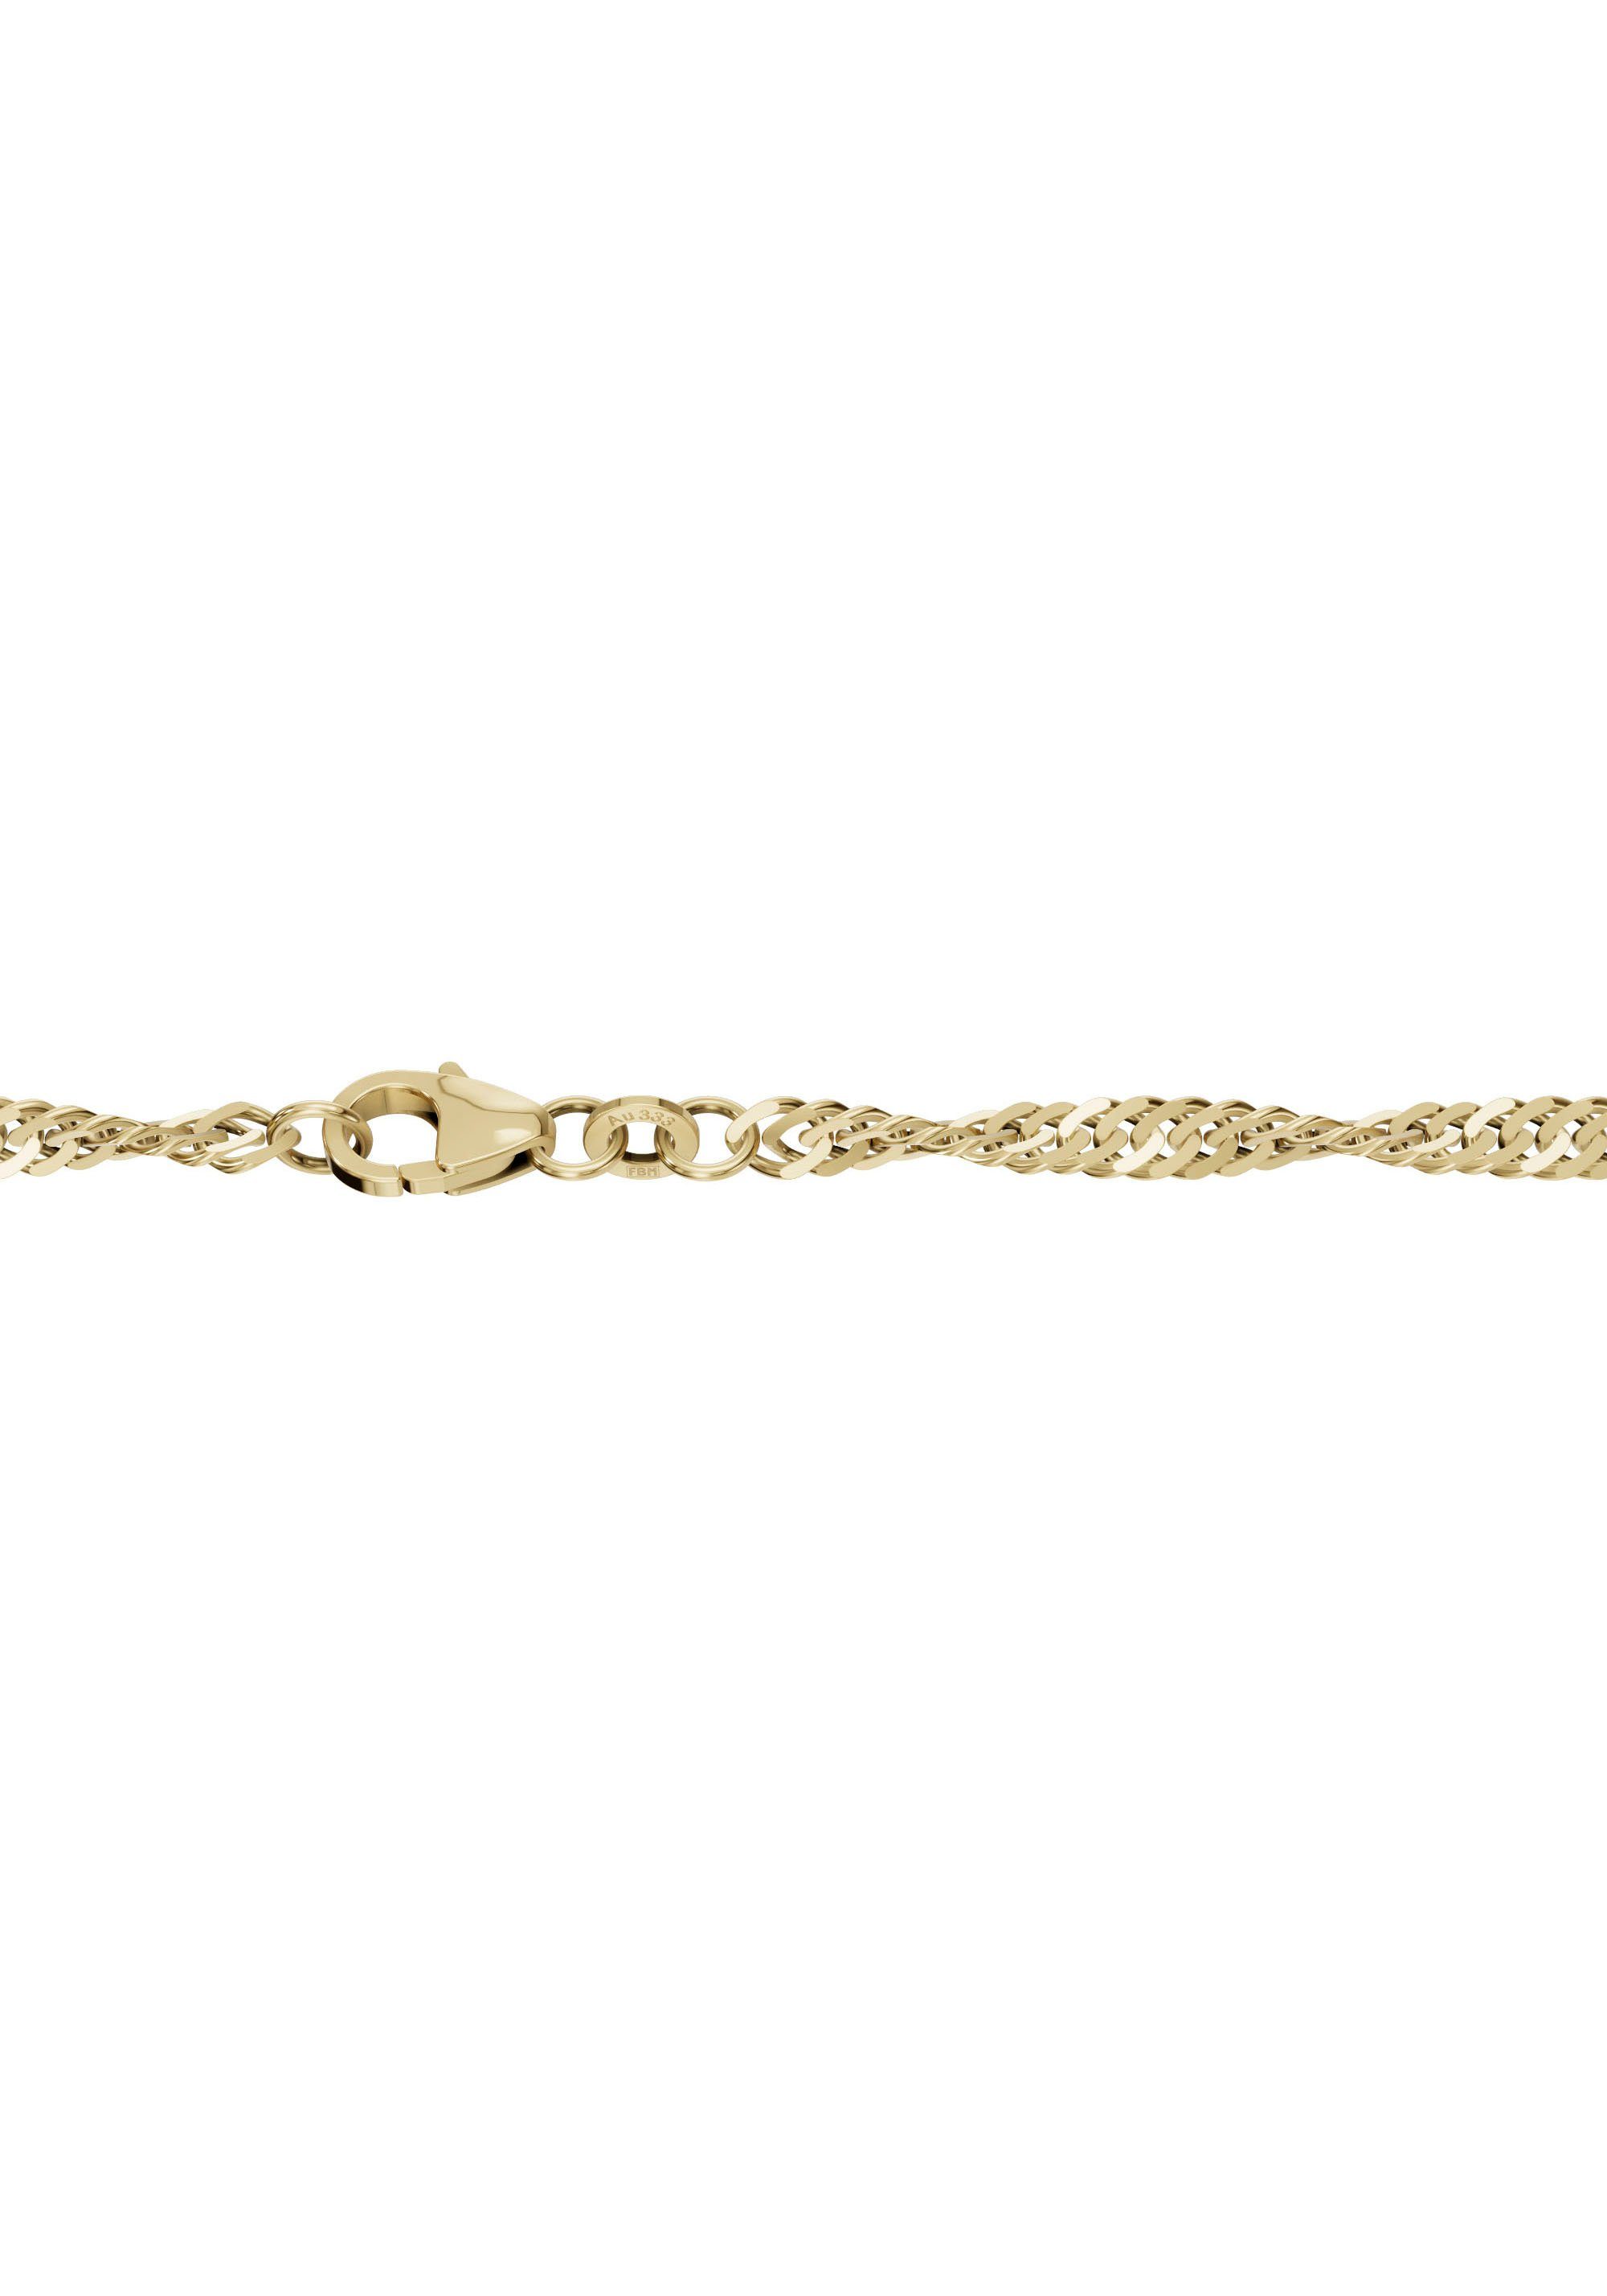 Goldkette Halsschmuck in gelbgoldfarben Firetti Made Geschenk 585 Gold Halskette Collier Germany Singapur, Schmuck